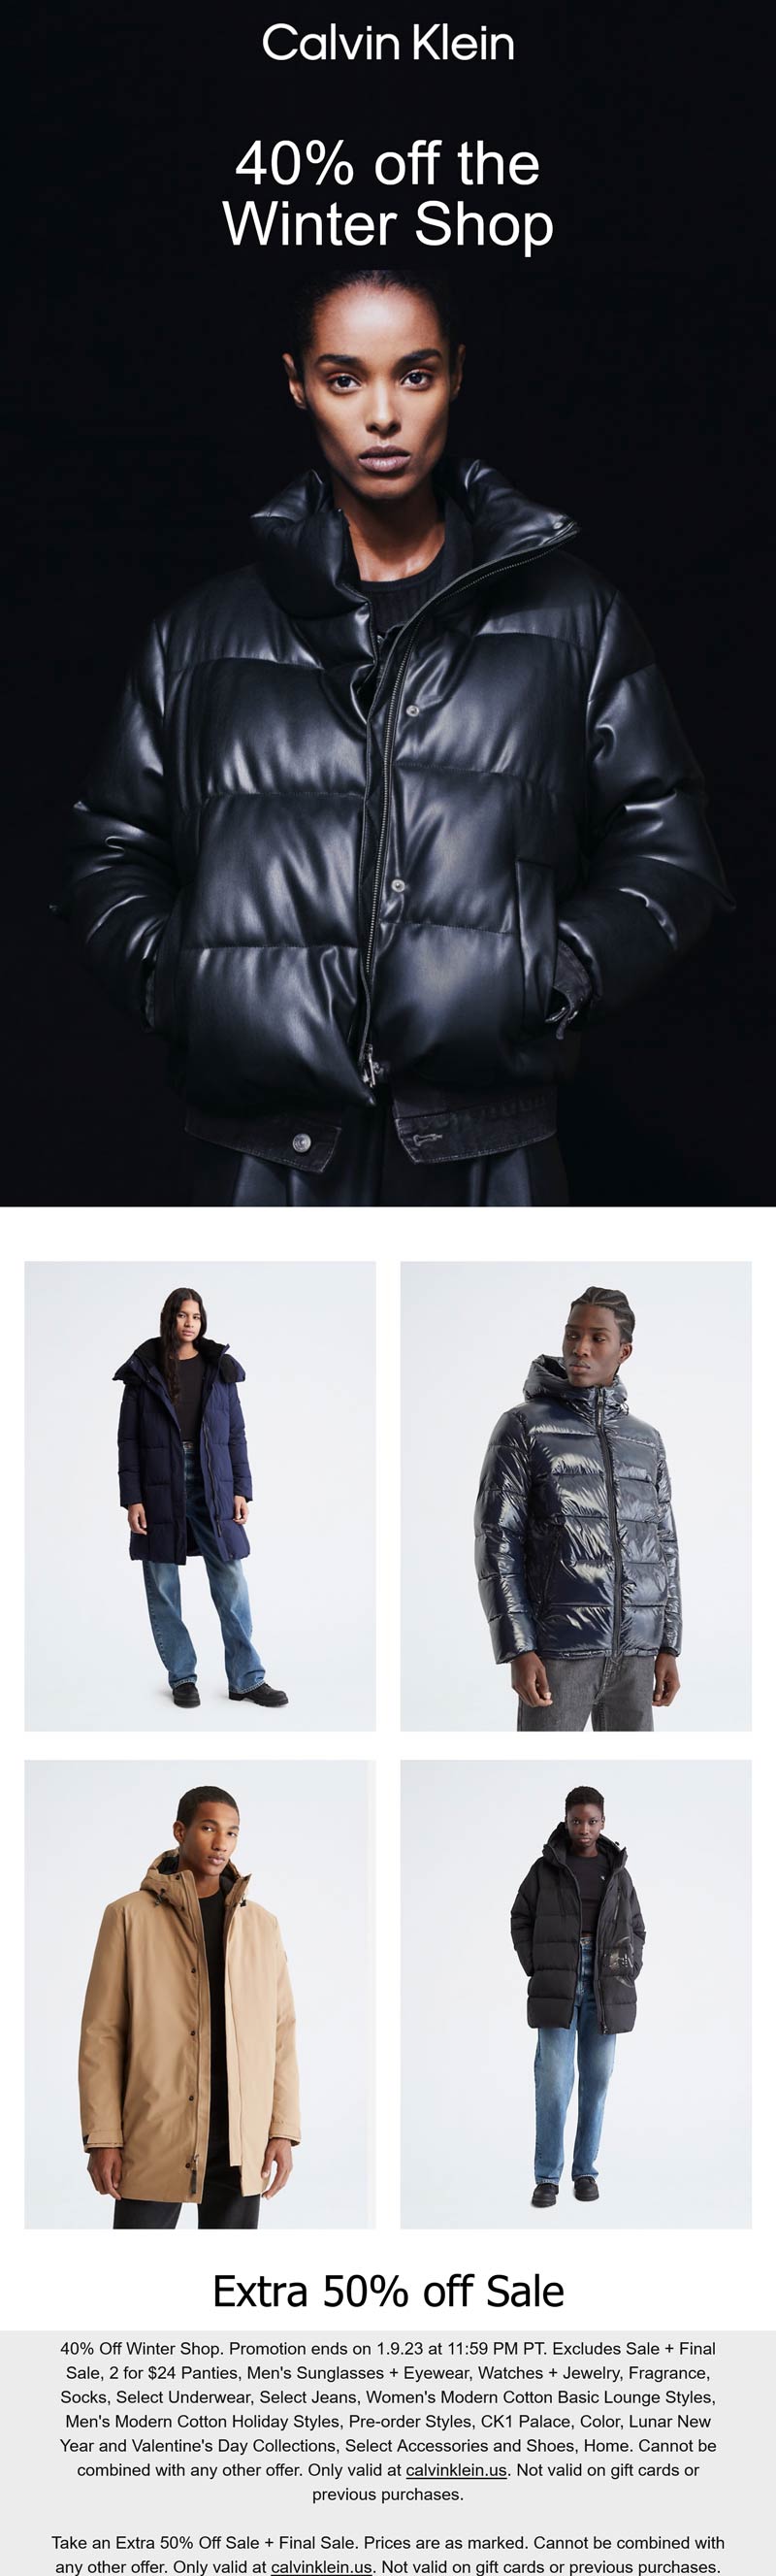 Calvin Klein stores Coupon  40% off winter shop & 50% off sale items at Calvin Klein #calvinklein 